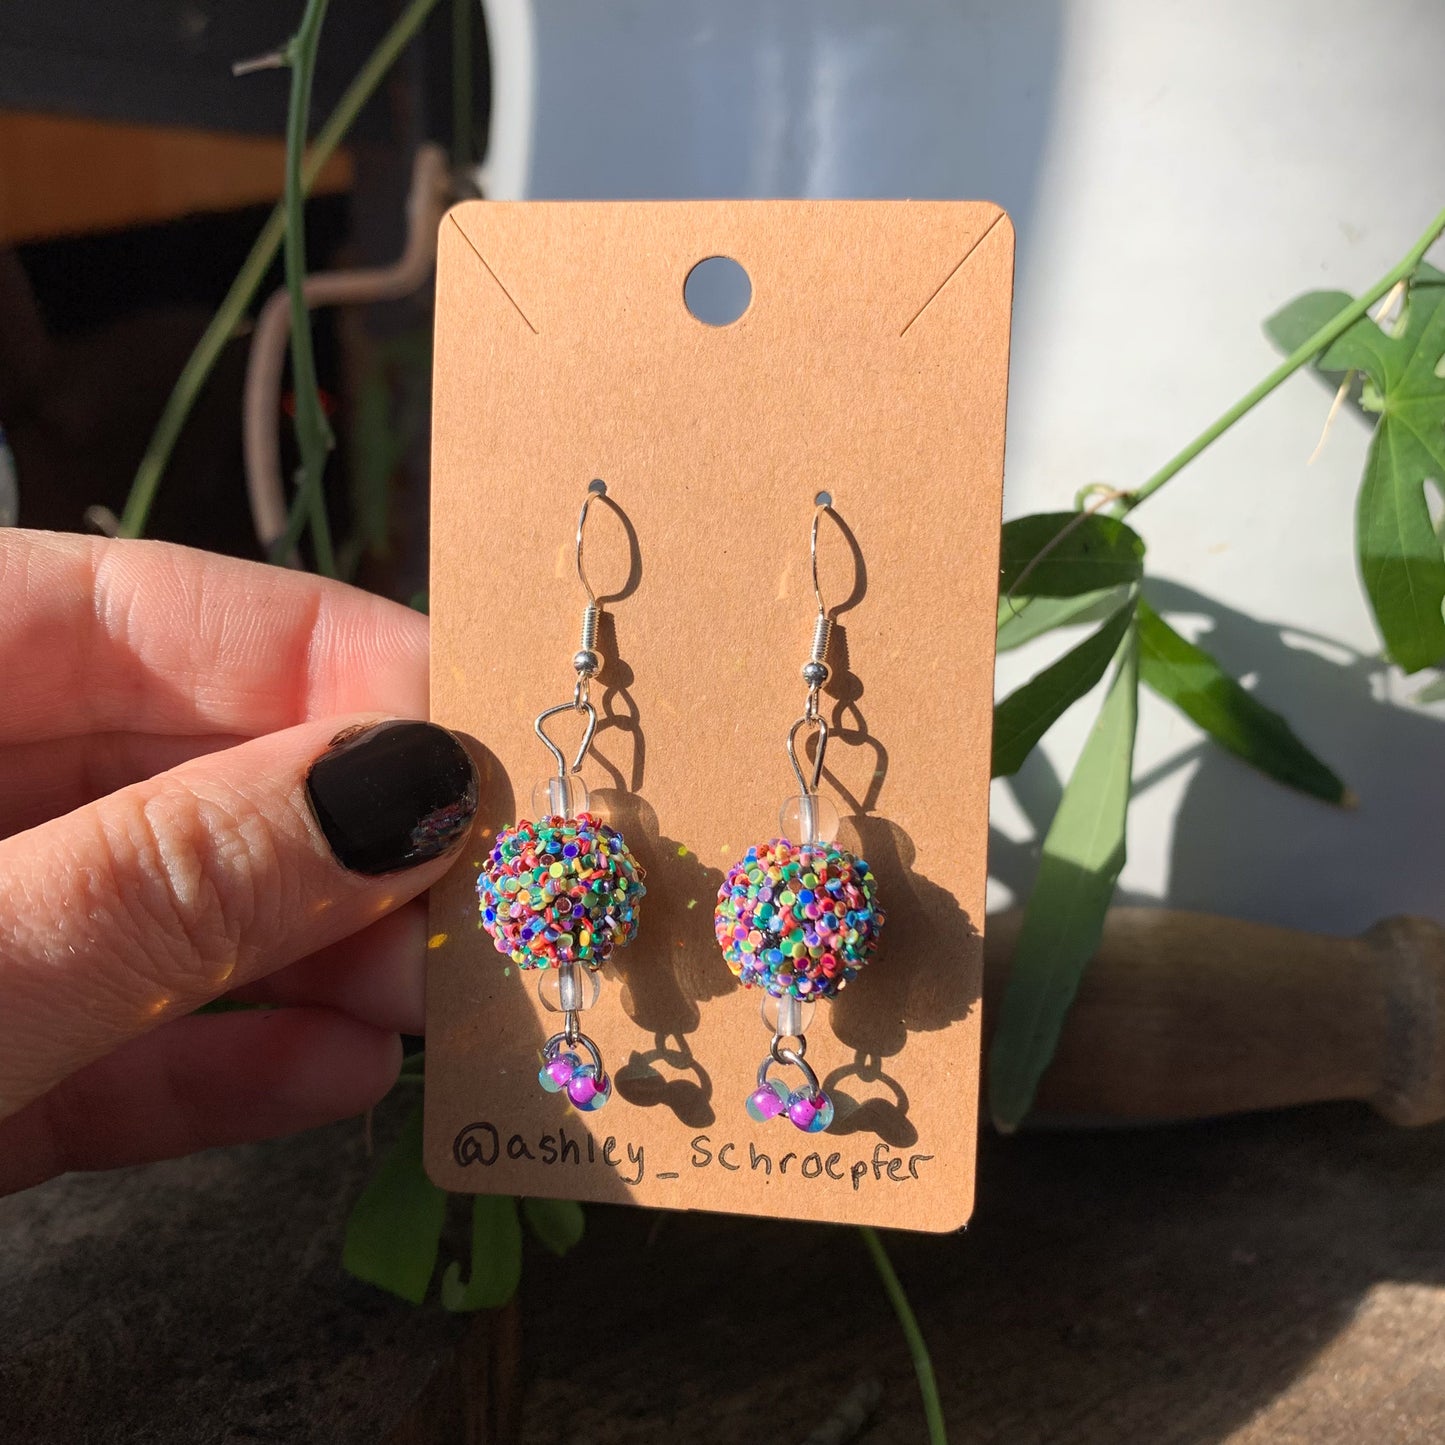 Purple Glitter Earrings